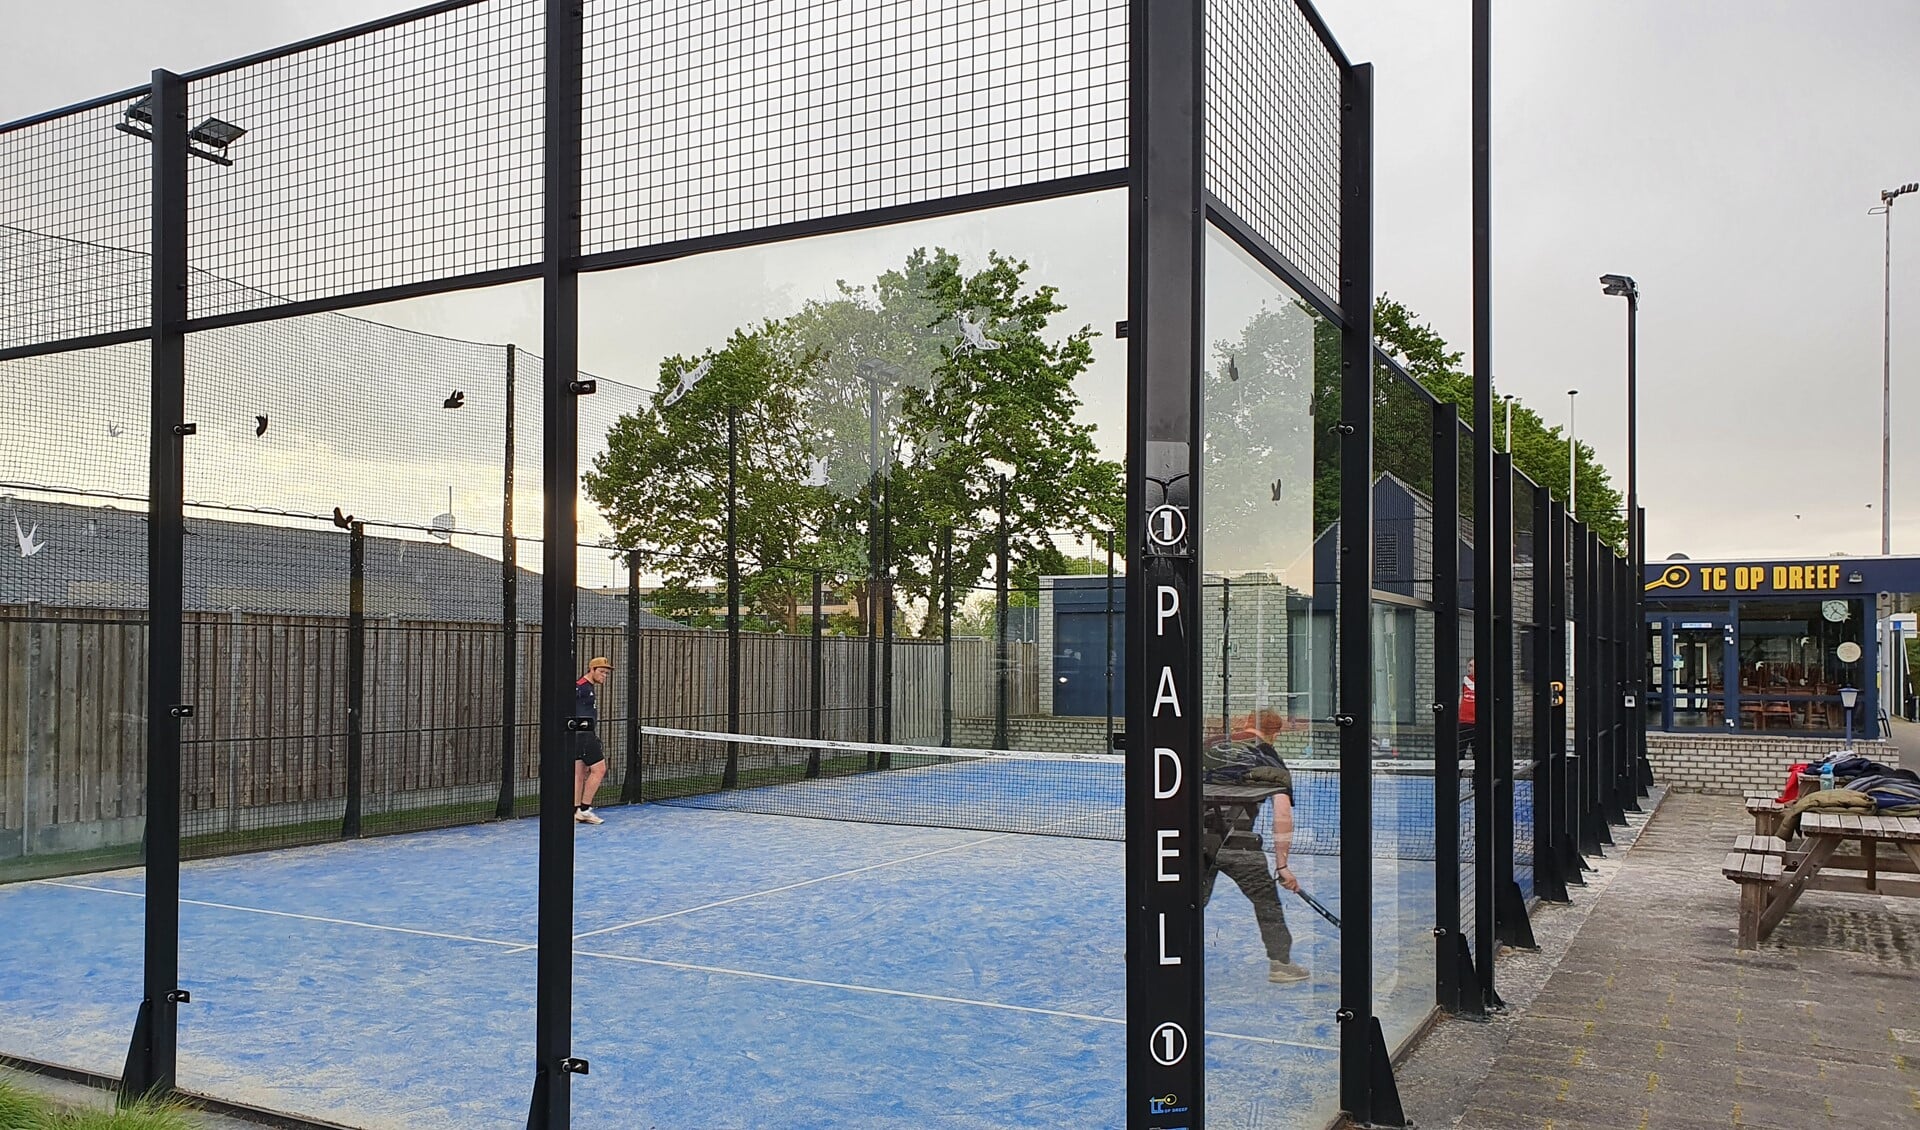 In de padelkooi werd voor het eerst een padel-minitoernooi afgewerkt. De sport wordt steeds populairder in Nederland.